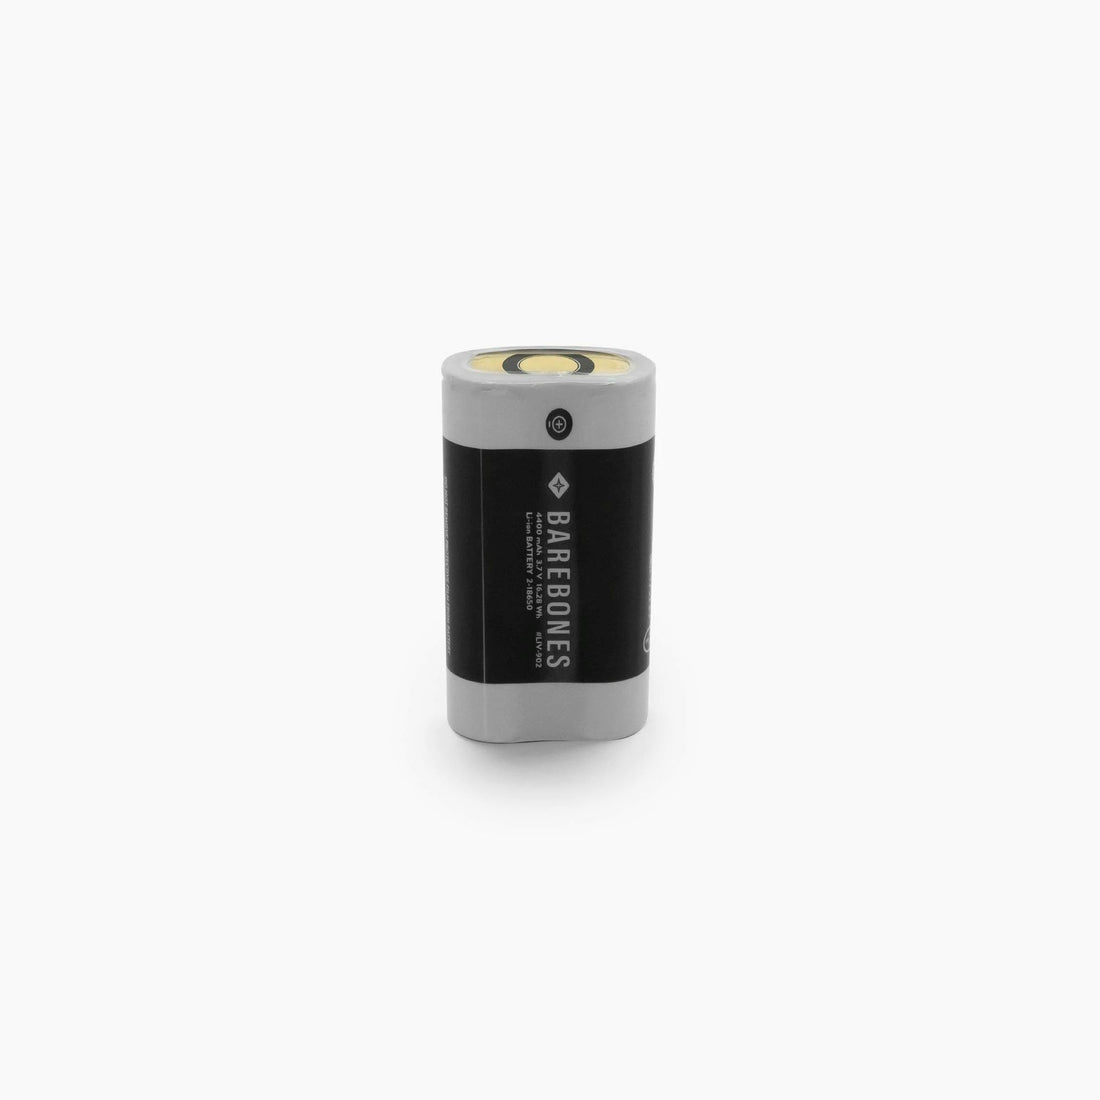 Battery Double Batteries 18650  Double Rechargeable Batteries